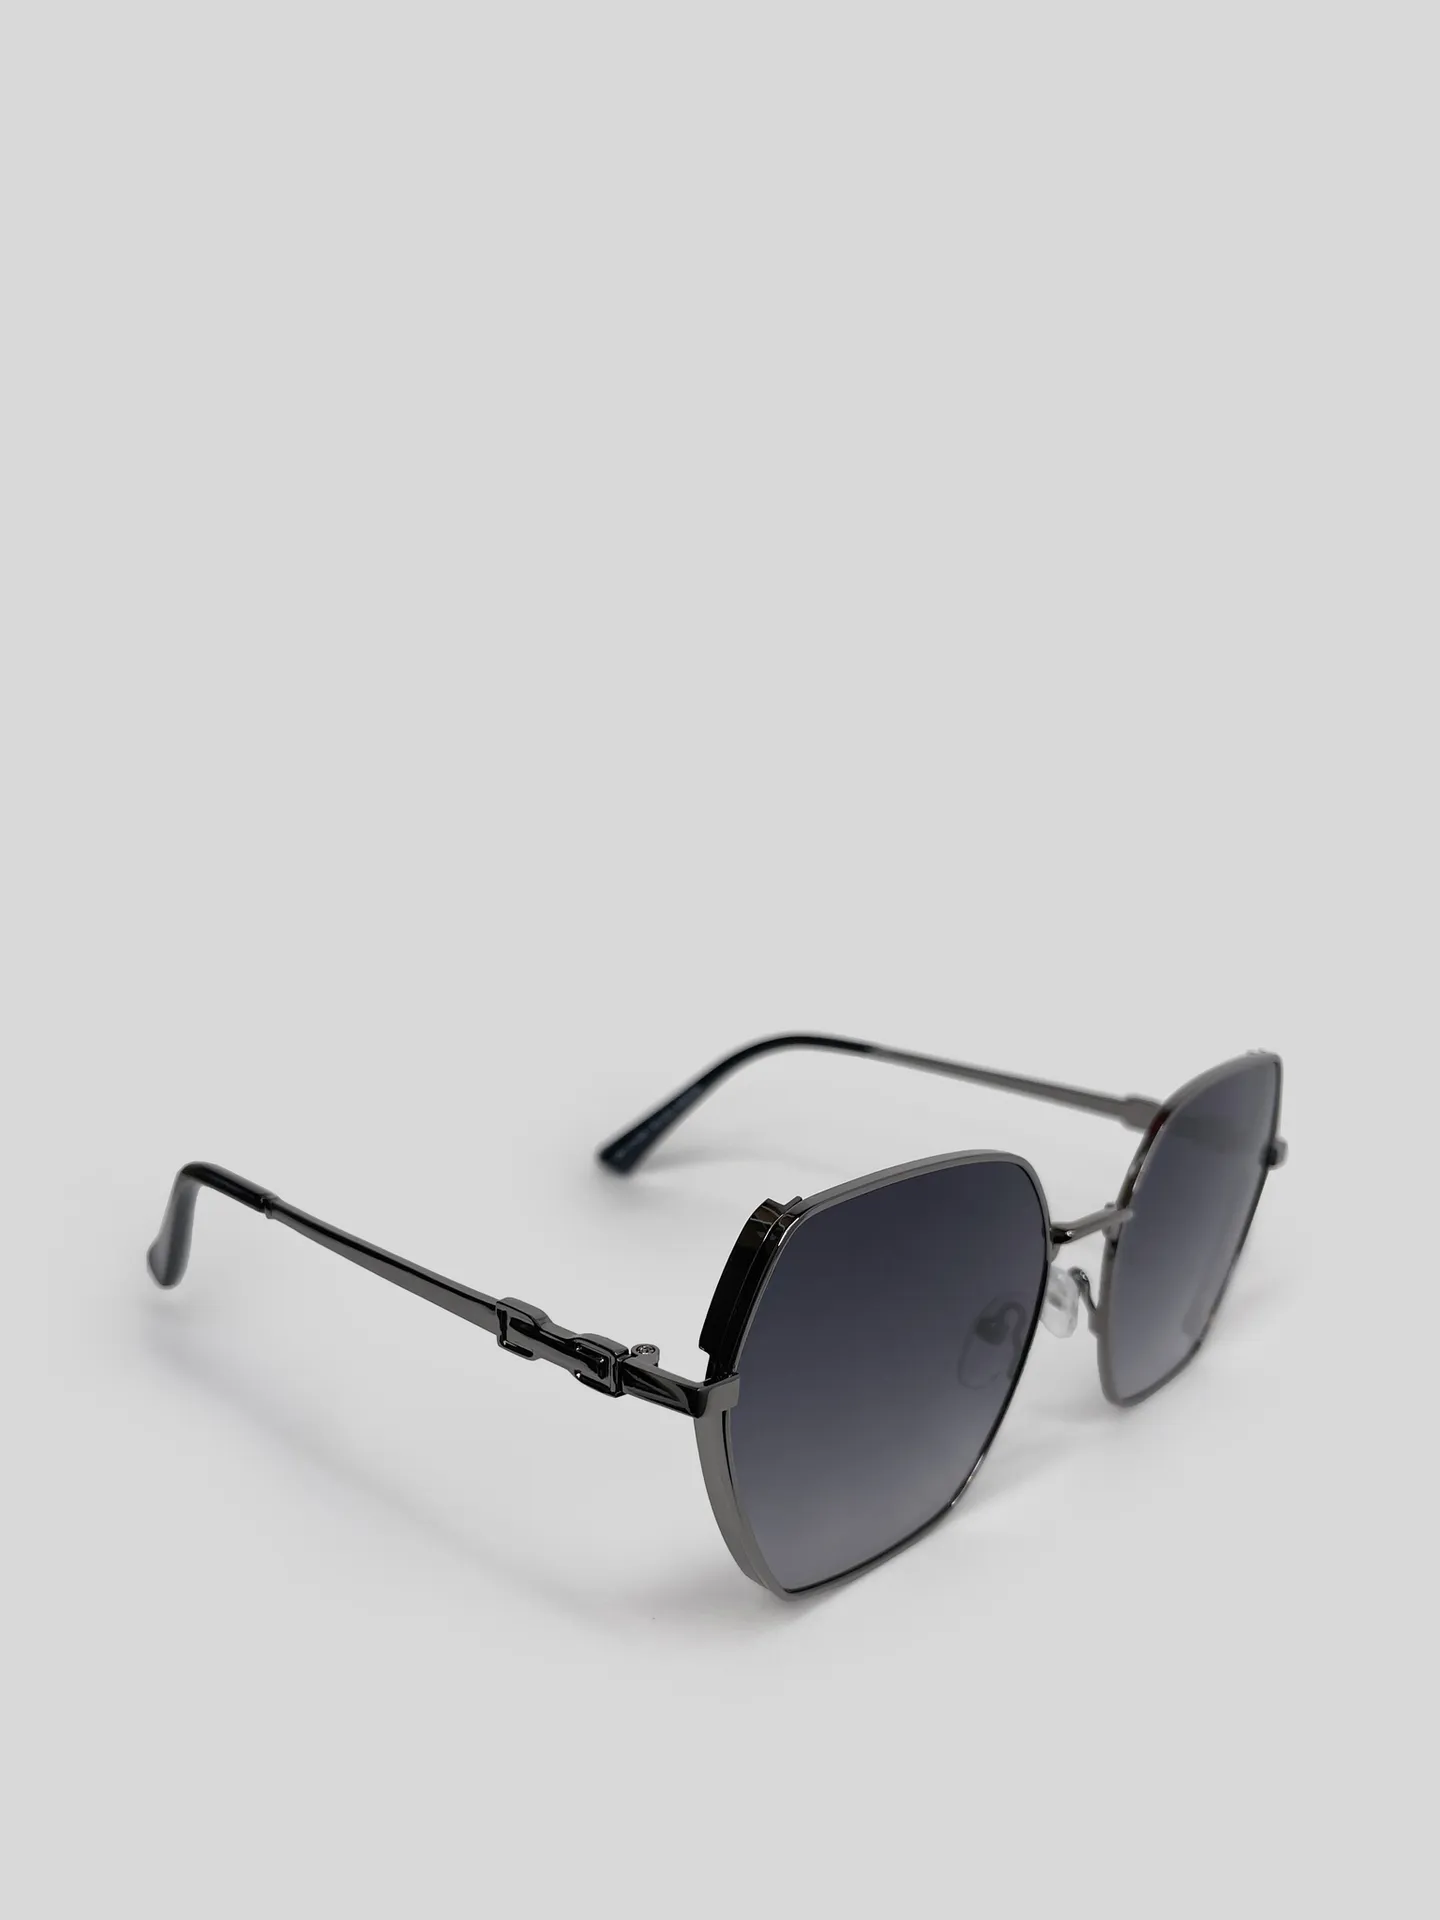 Солнцезащитные очки KD2309 с фигурами на дужках купить